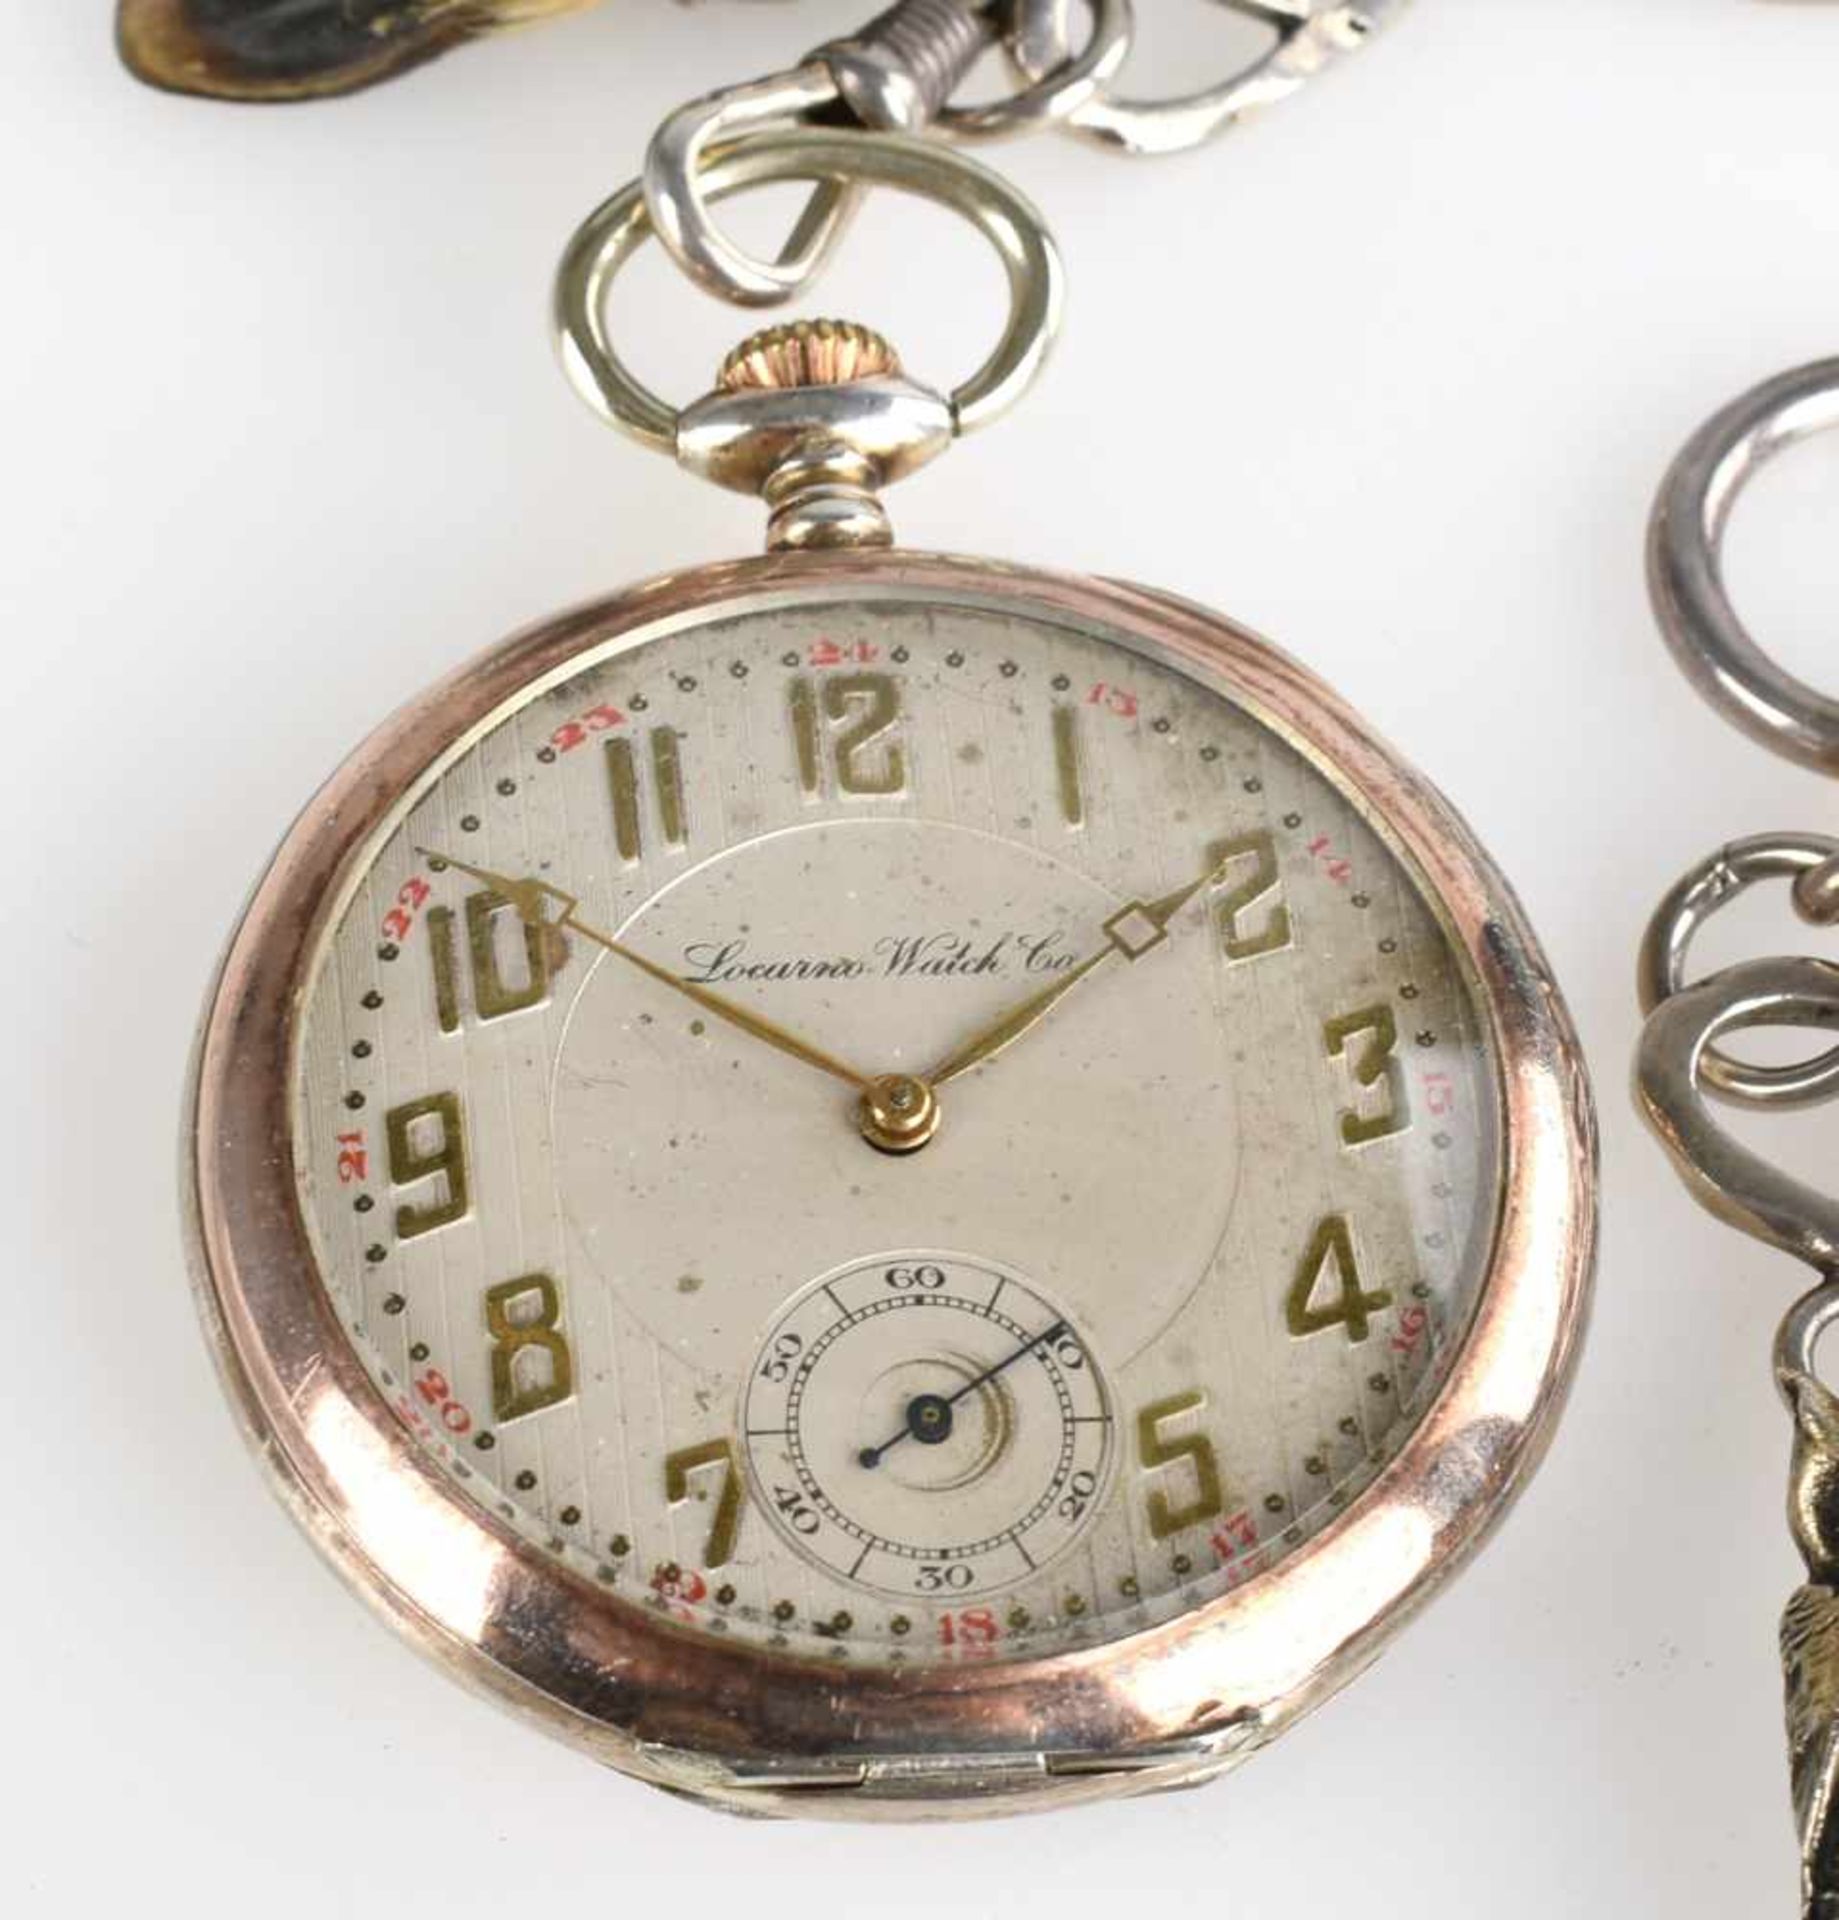 Taschenuhr mit Uhrenkette Silber 800, helles Zifferblatt bez. "Locarno Watch Co.", Stunde, Minute - Bild 3 aus 4